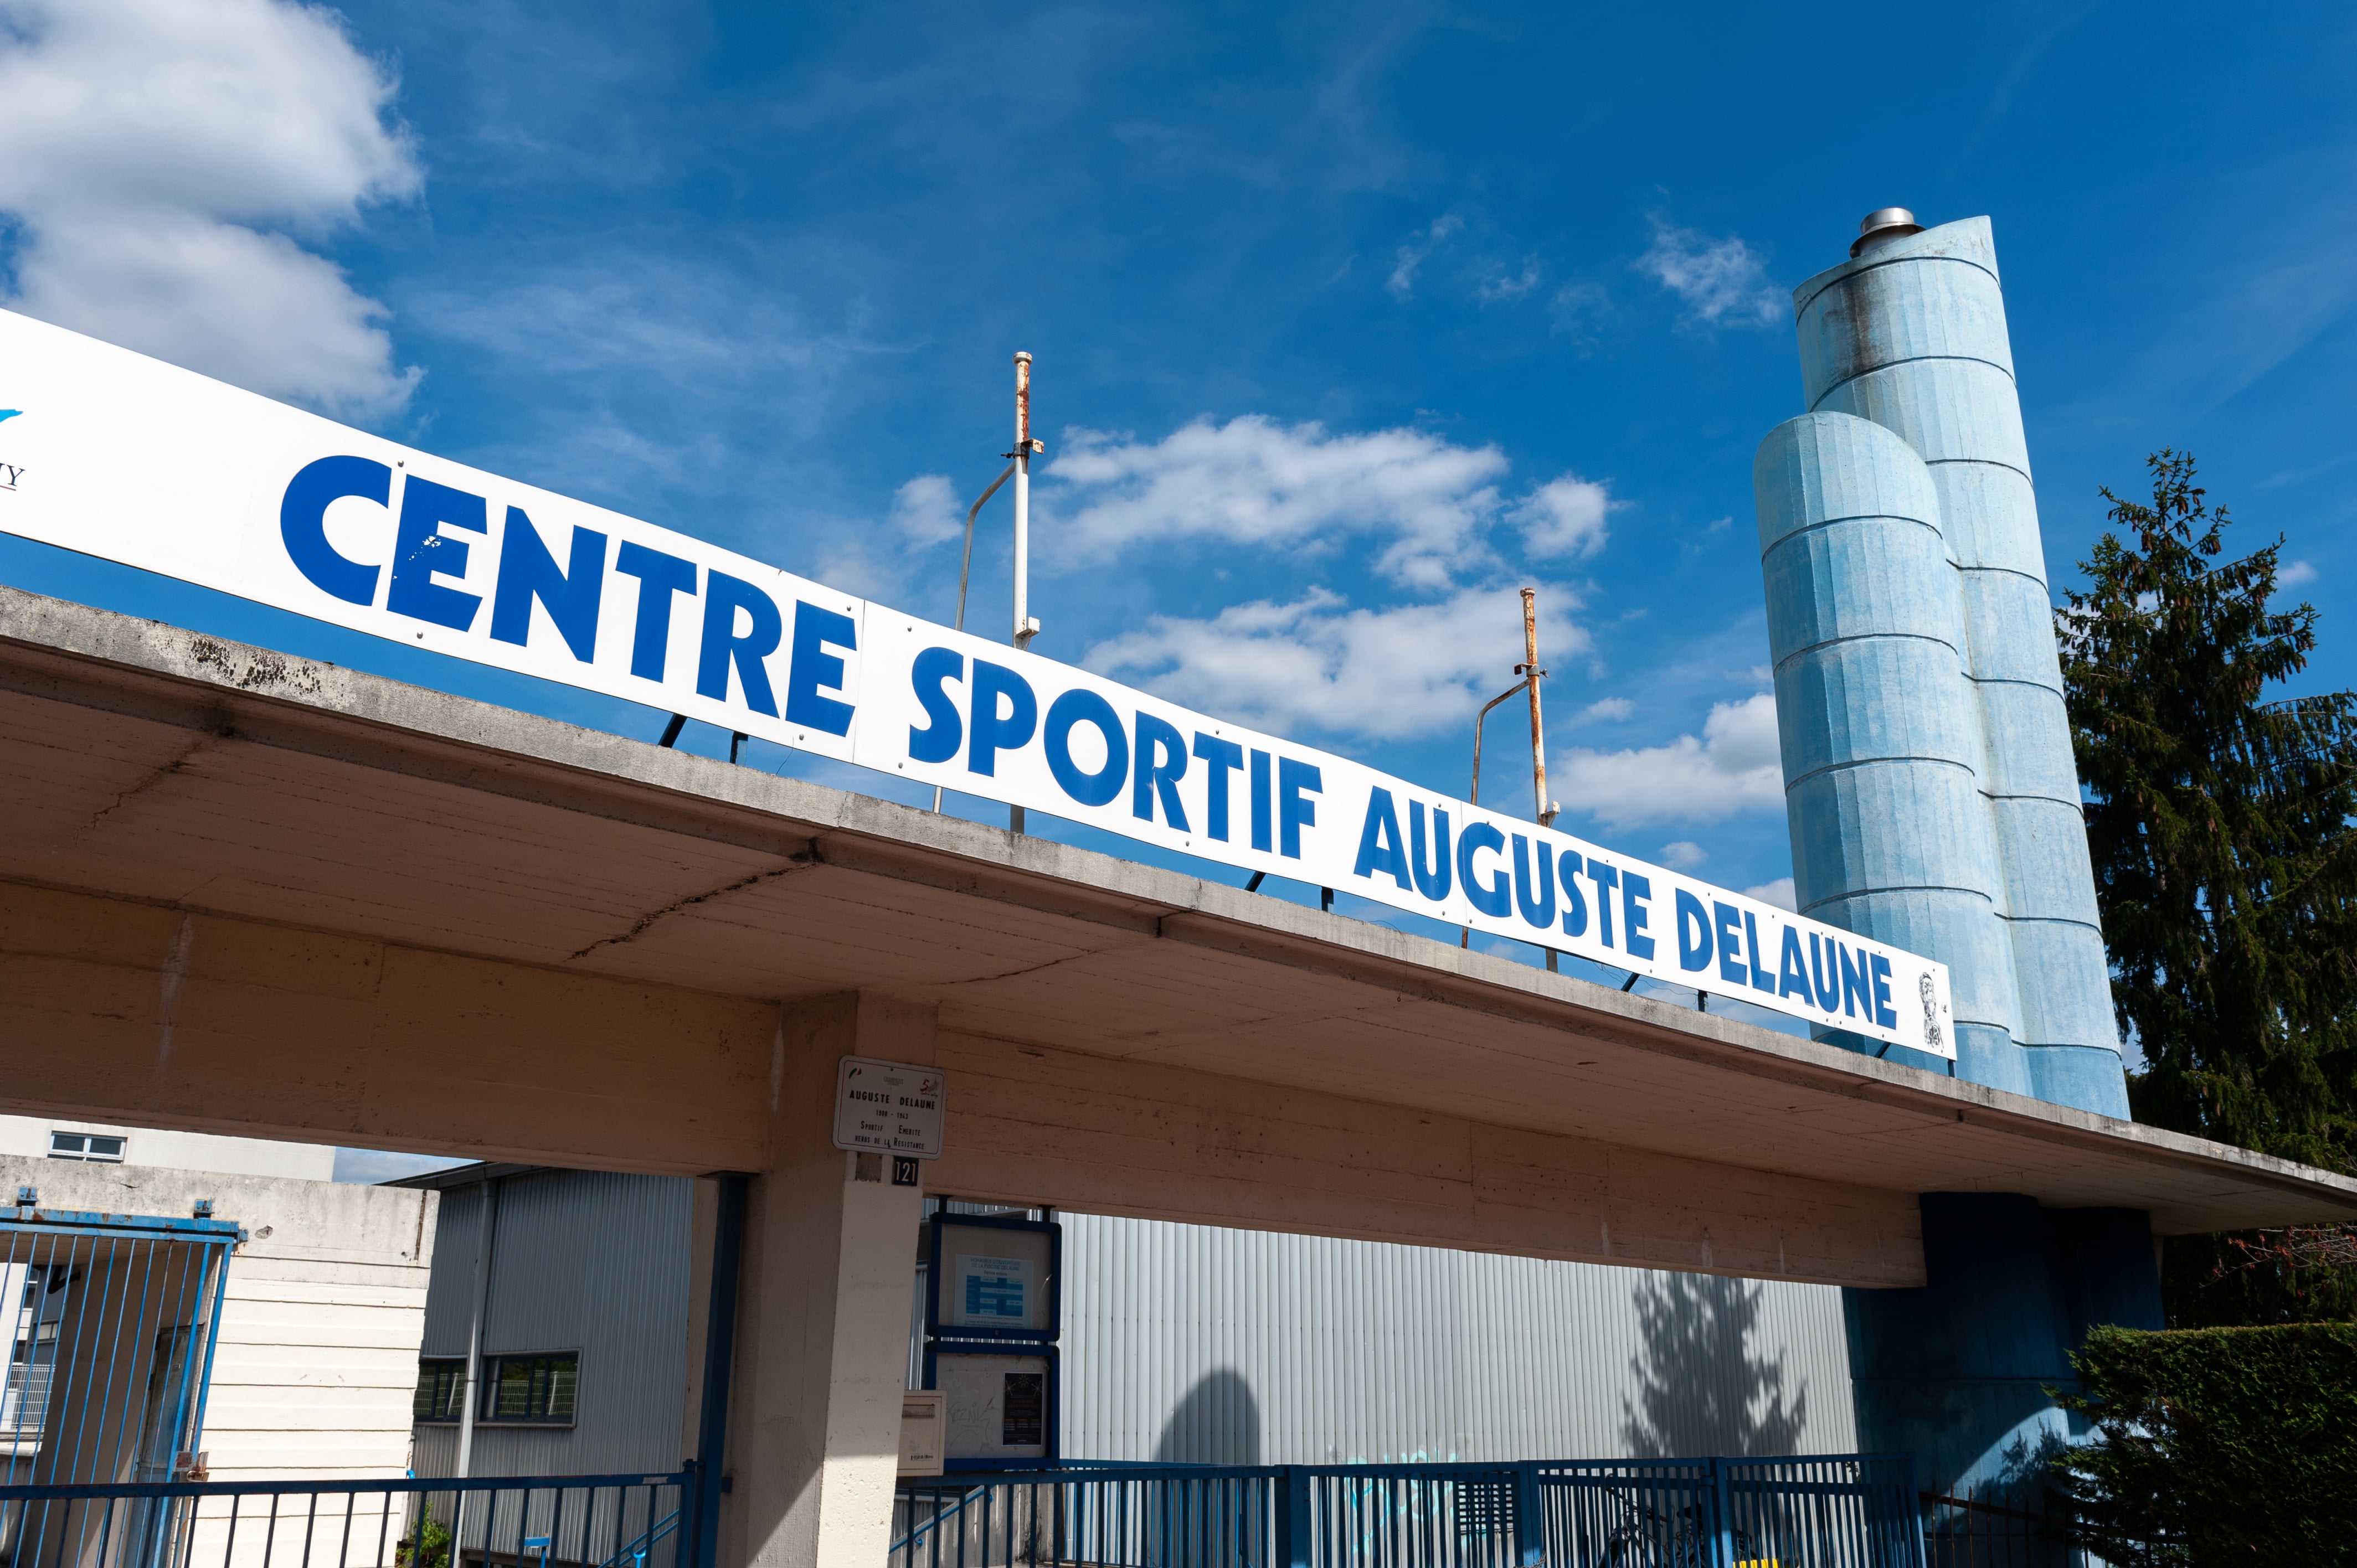 ville-ogic-champigny-sur-marne-eclosion-centre-sportif-auguste-delaune